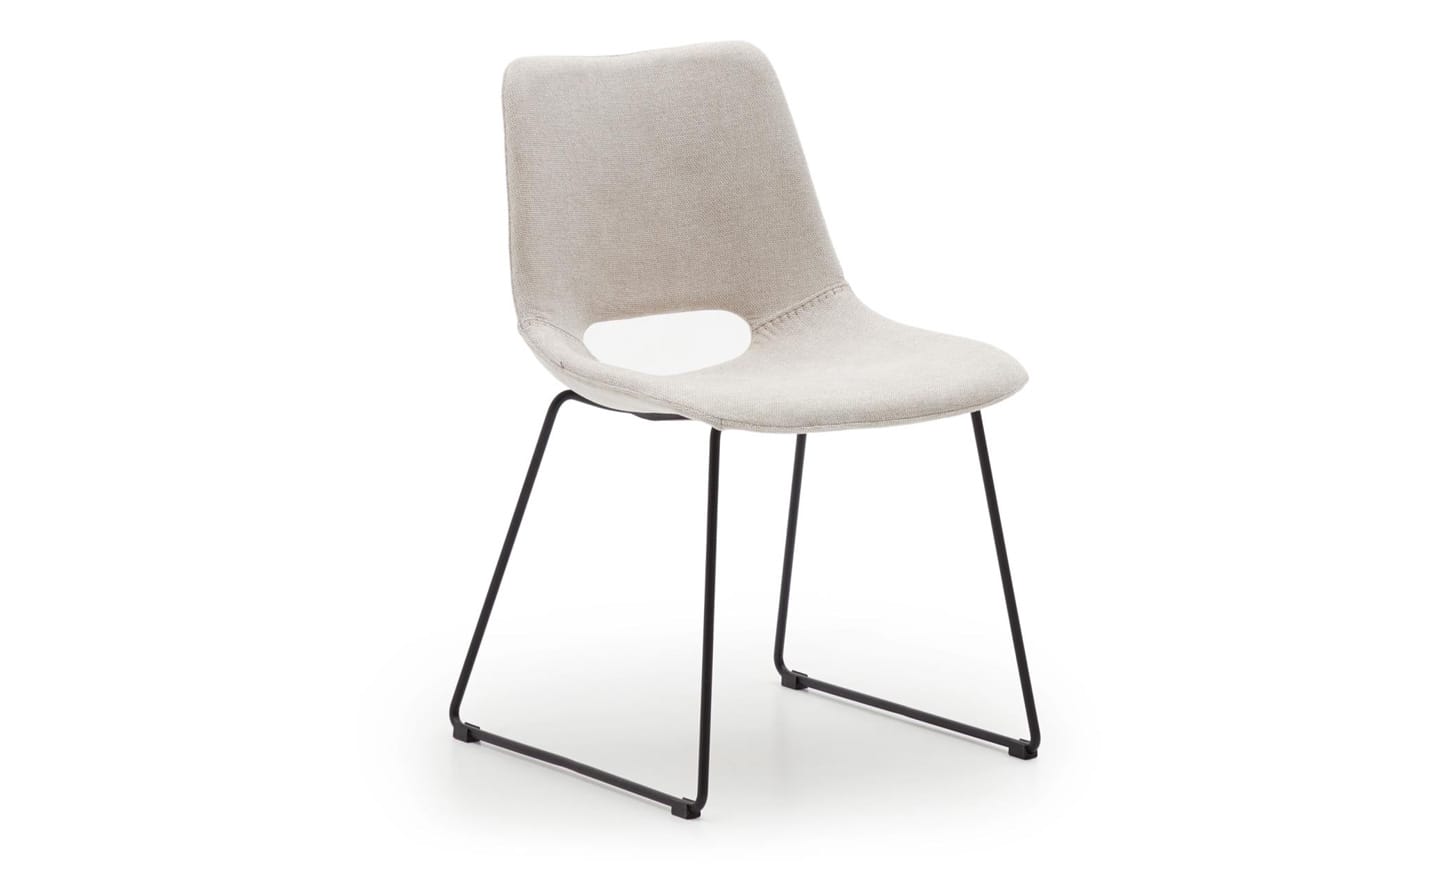 Cadeira Zahara Bege, estofada cor bege, pernas de aço preto, design moderno figura curvada, proteções de plástico nas pernas.